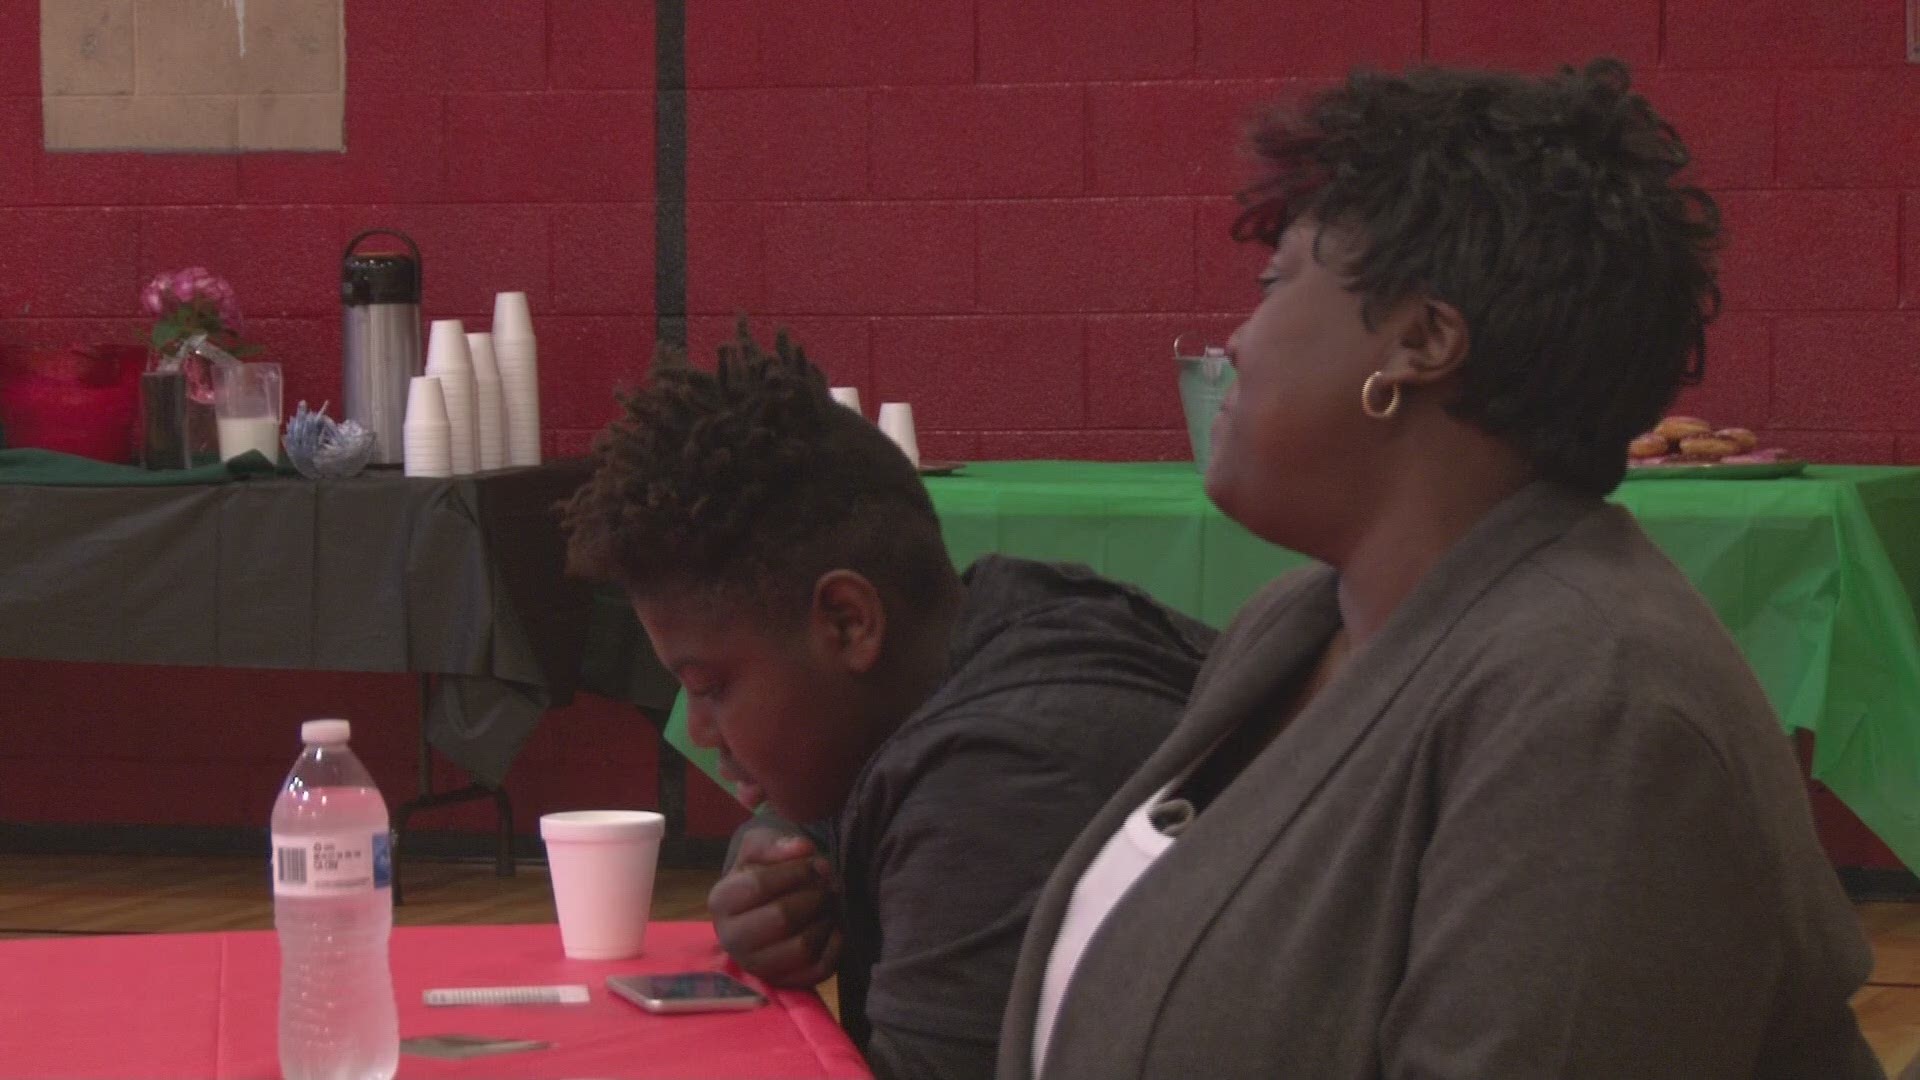 Community members met on Saturday to celebrate black history in East Tennessee